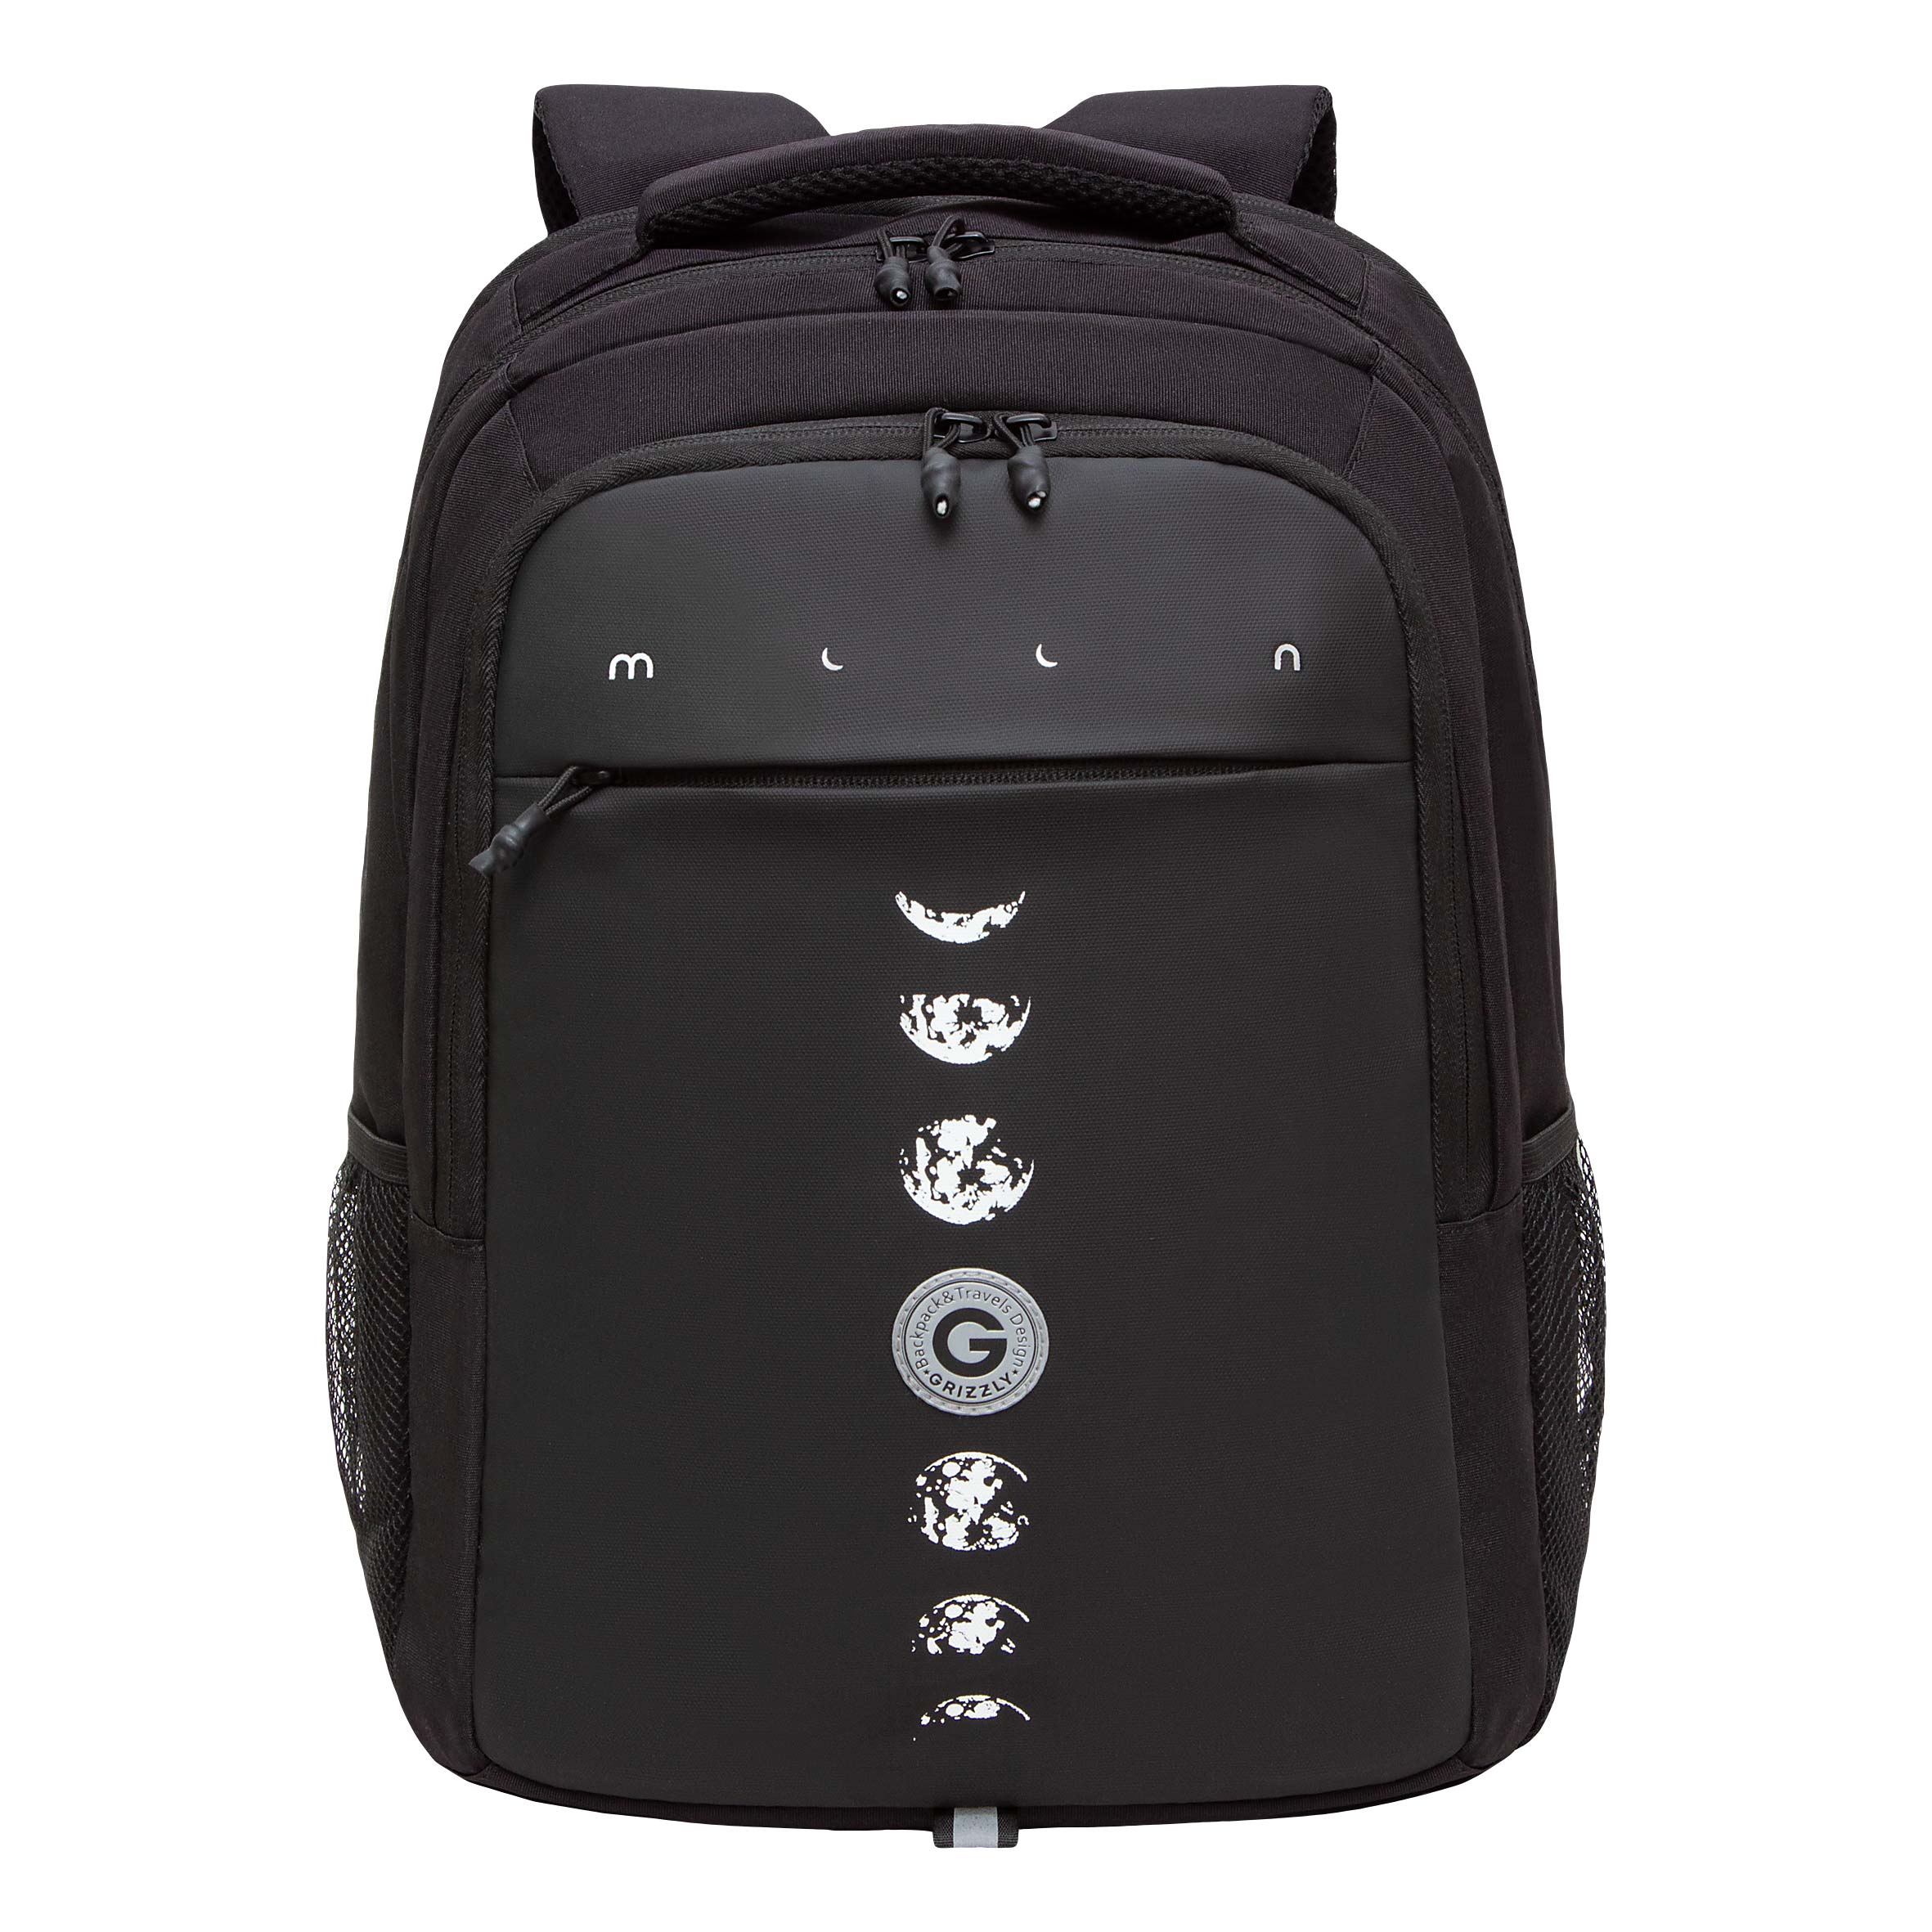 Рюкзак для мальчиков Grizzly RU-432-1 черный